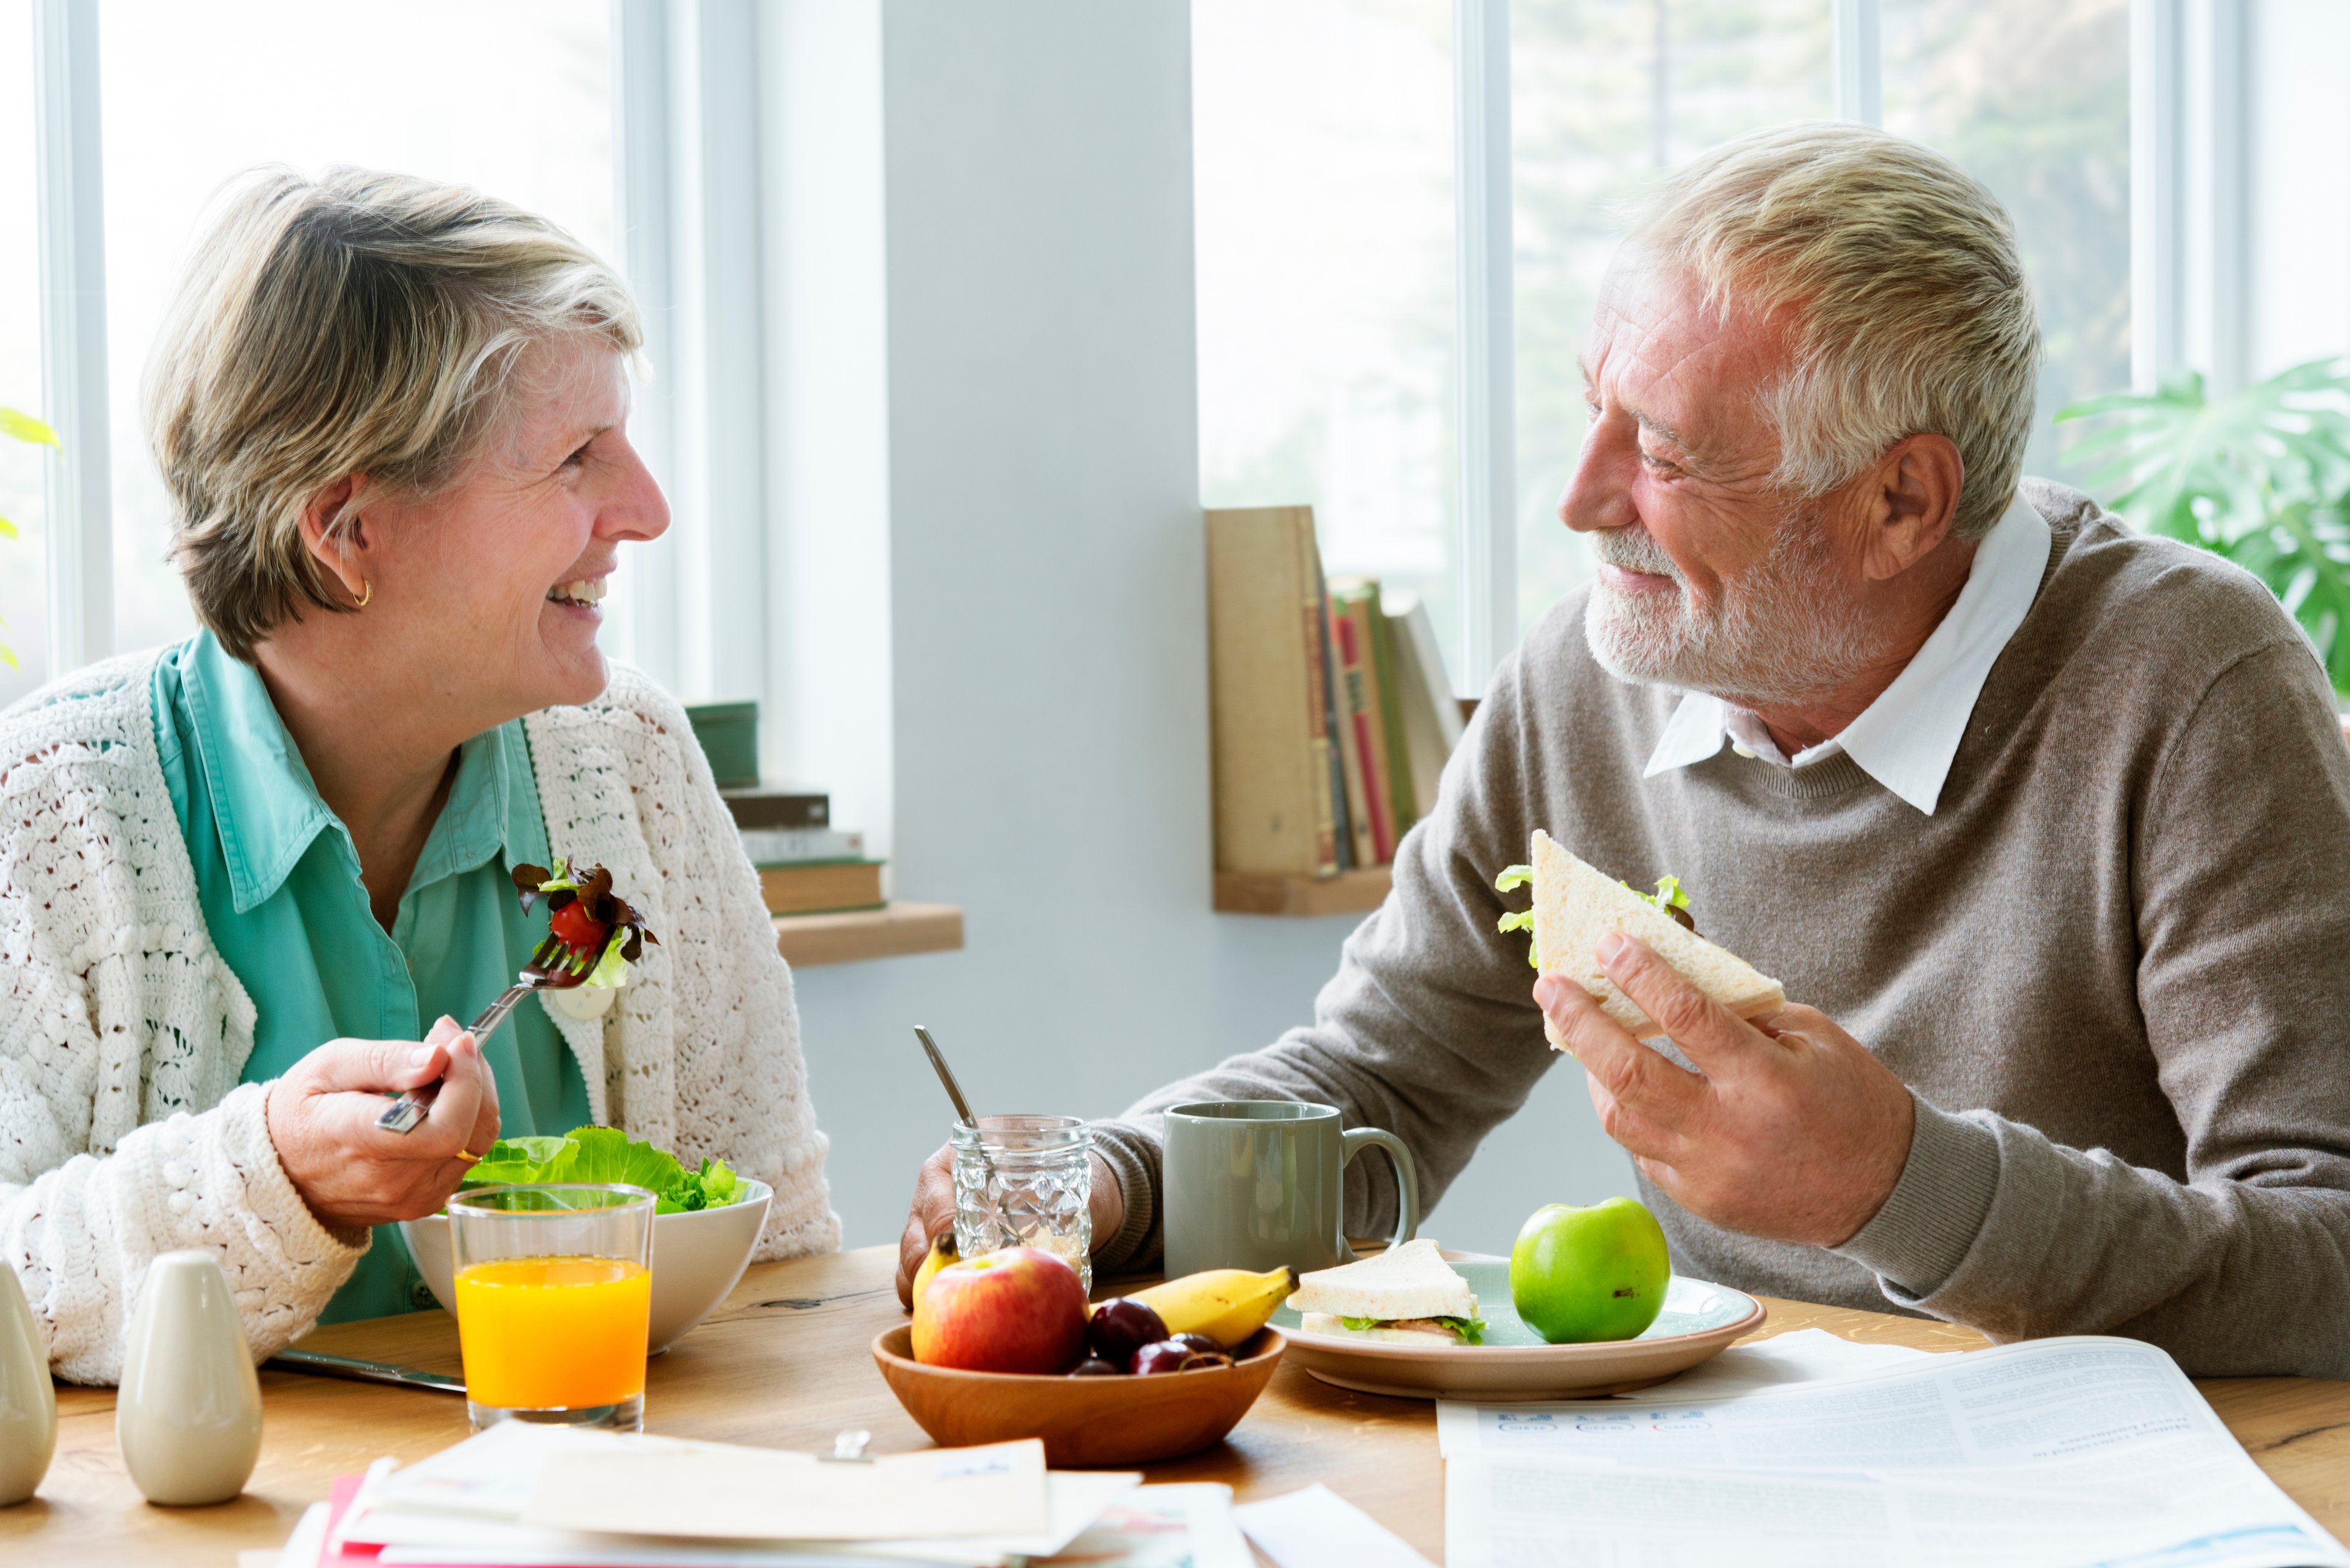 Питания лиц пожилого возраста. Еда для пожилых людей. Здоровое питание для пожилых. Рациональное питание в пожилом возрасте. Здоровое питание в зрелом возрасте.